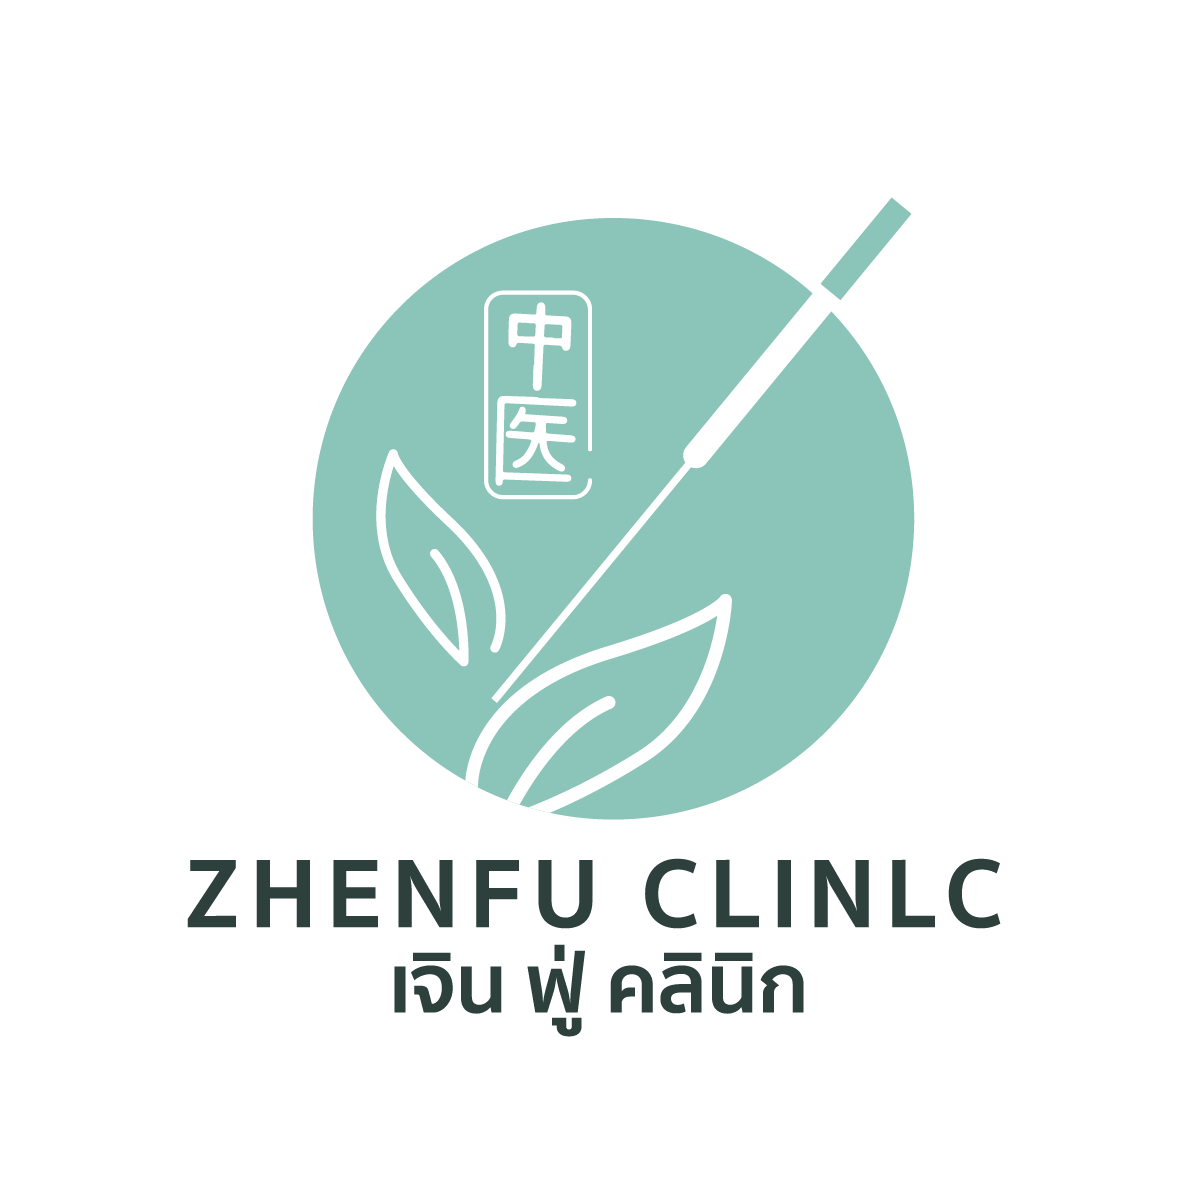 zhenfuclinic